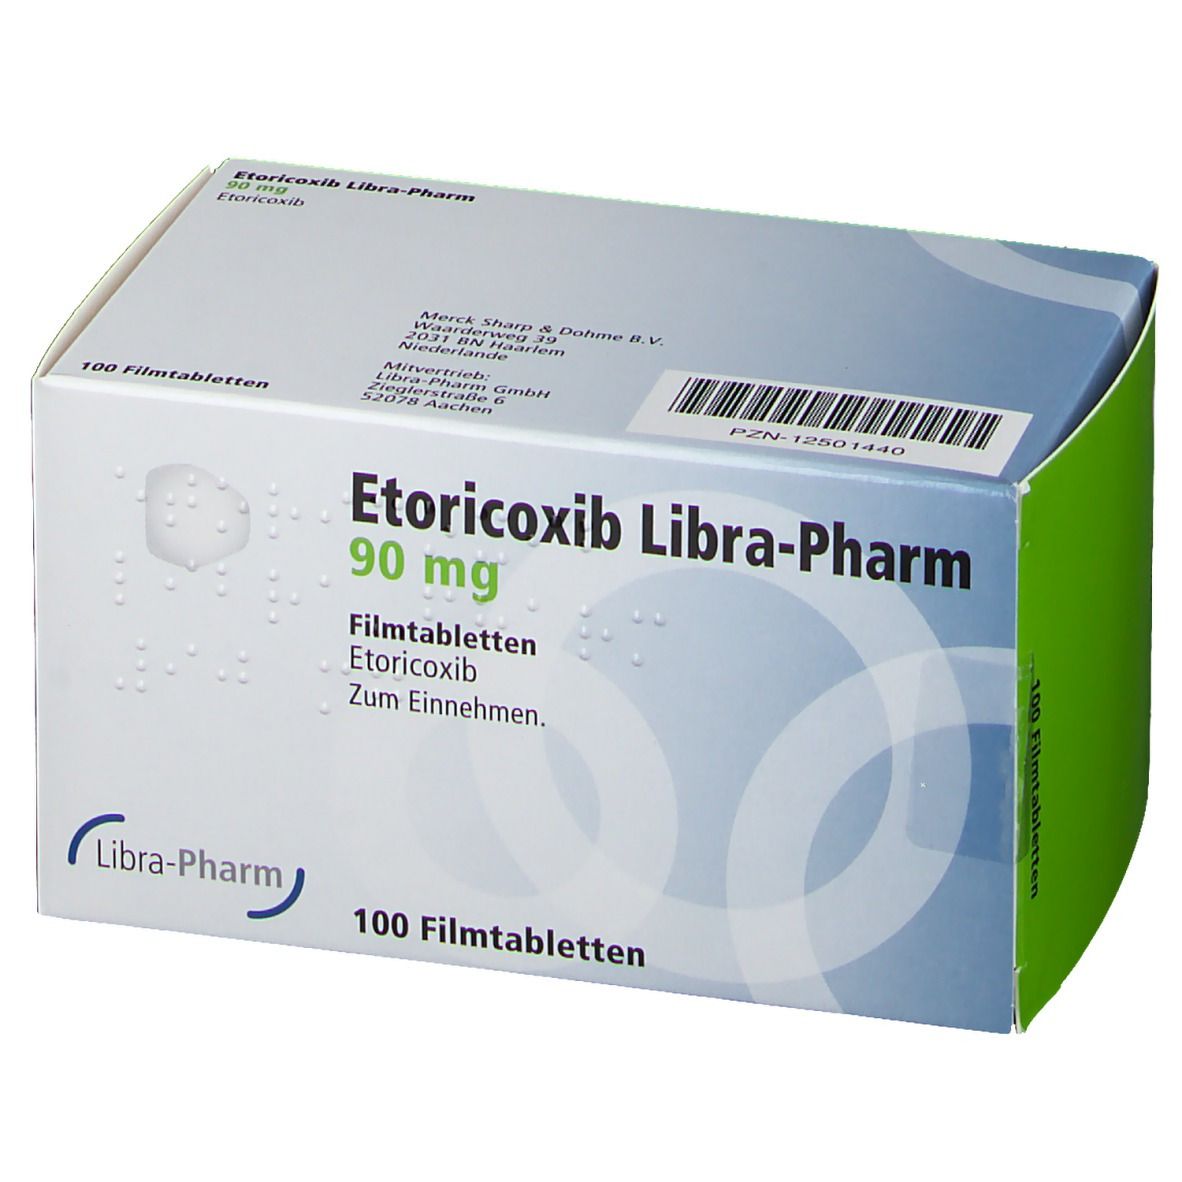 Etoricoxib Libra-Pharm 90 mg